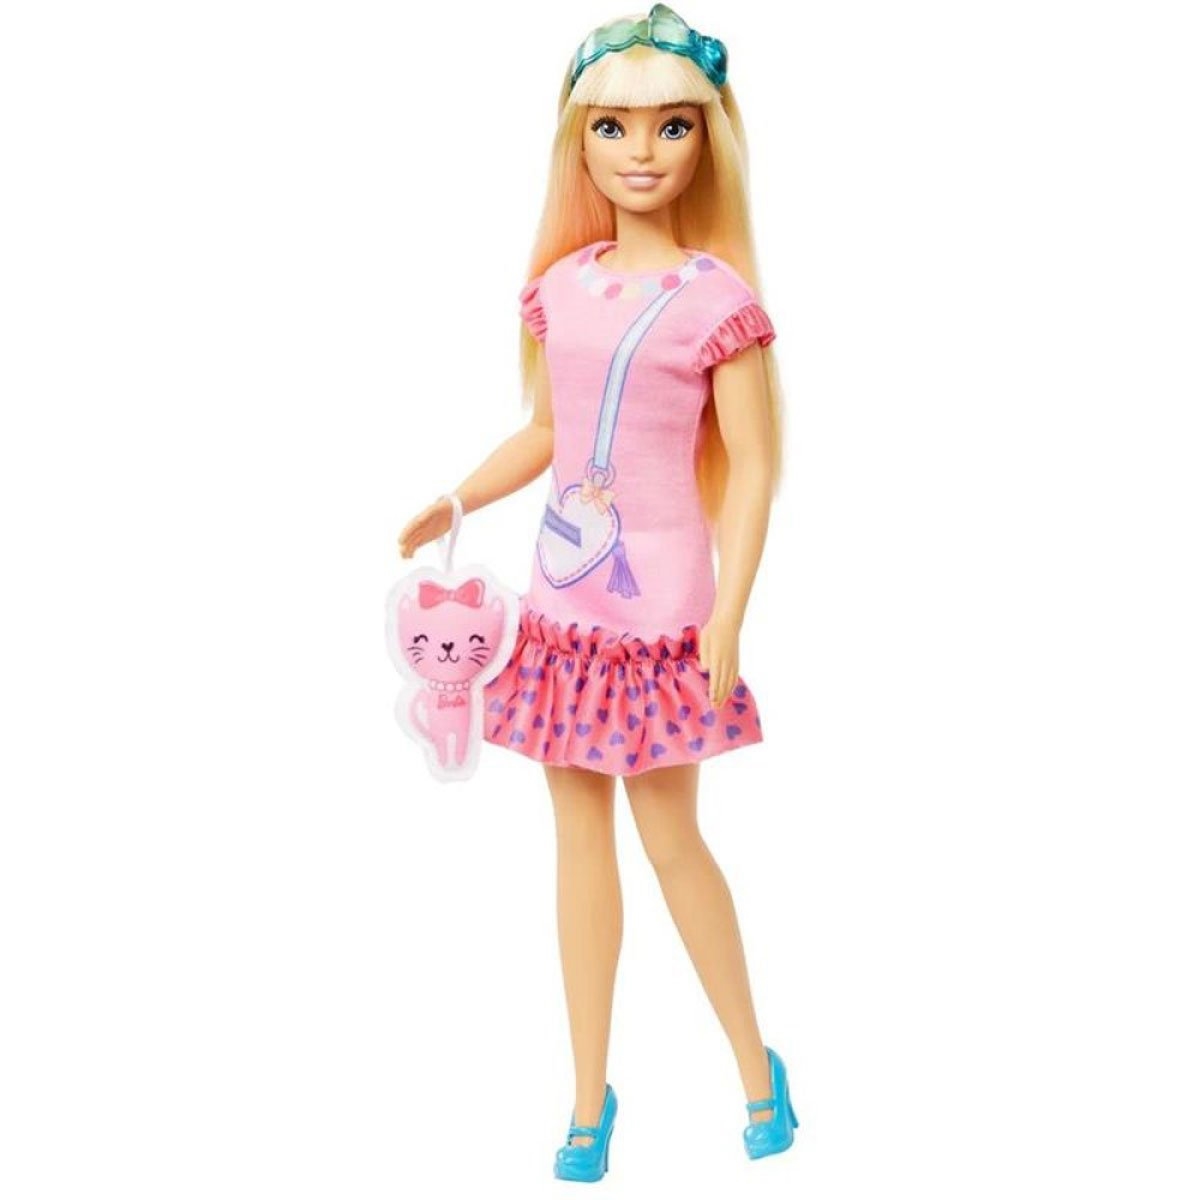 Vestido Sem Cola e Sem Costura Para Bonecas, Como Fazer Roupa Para Barbie